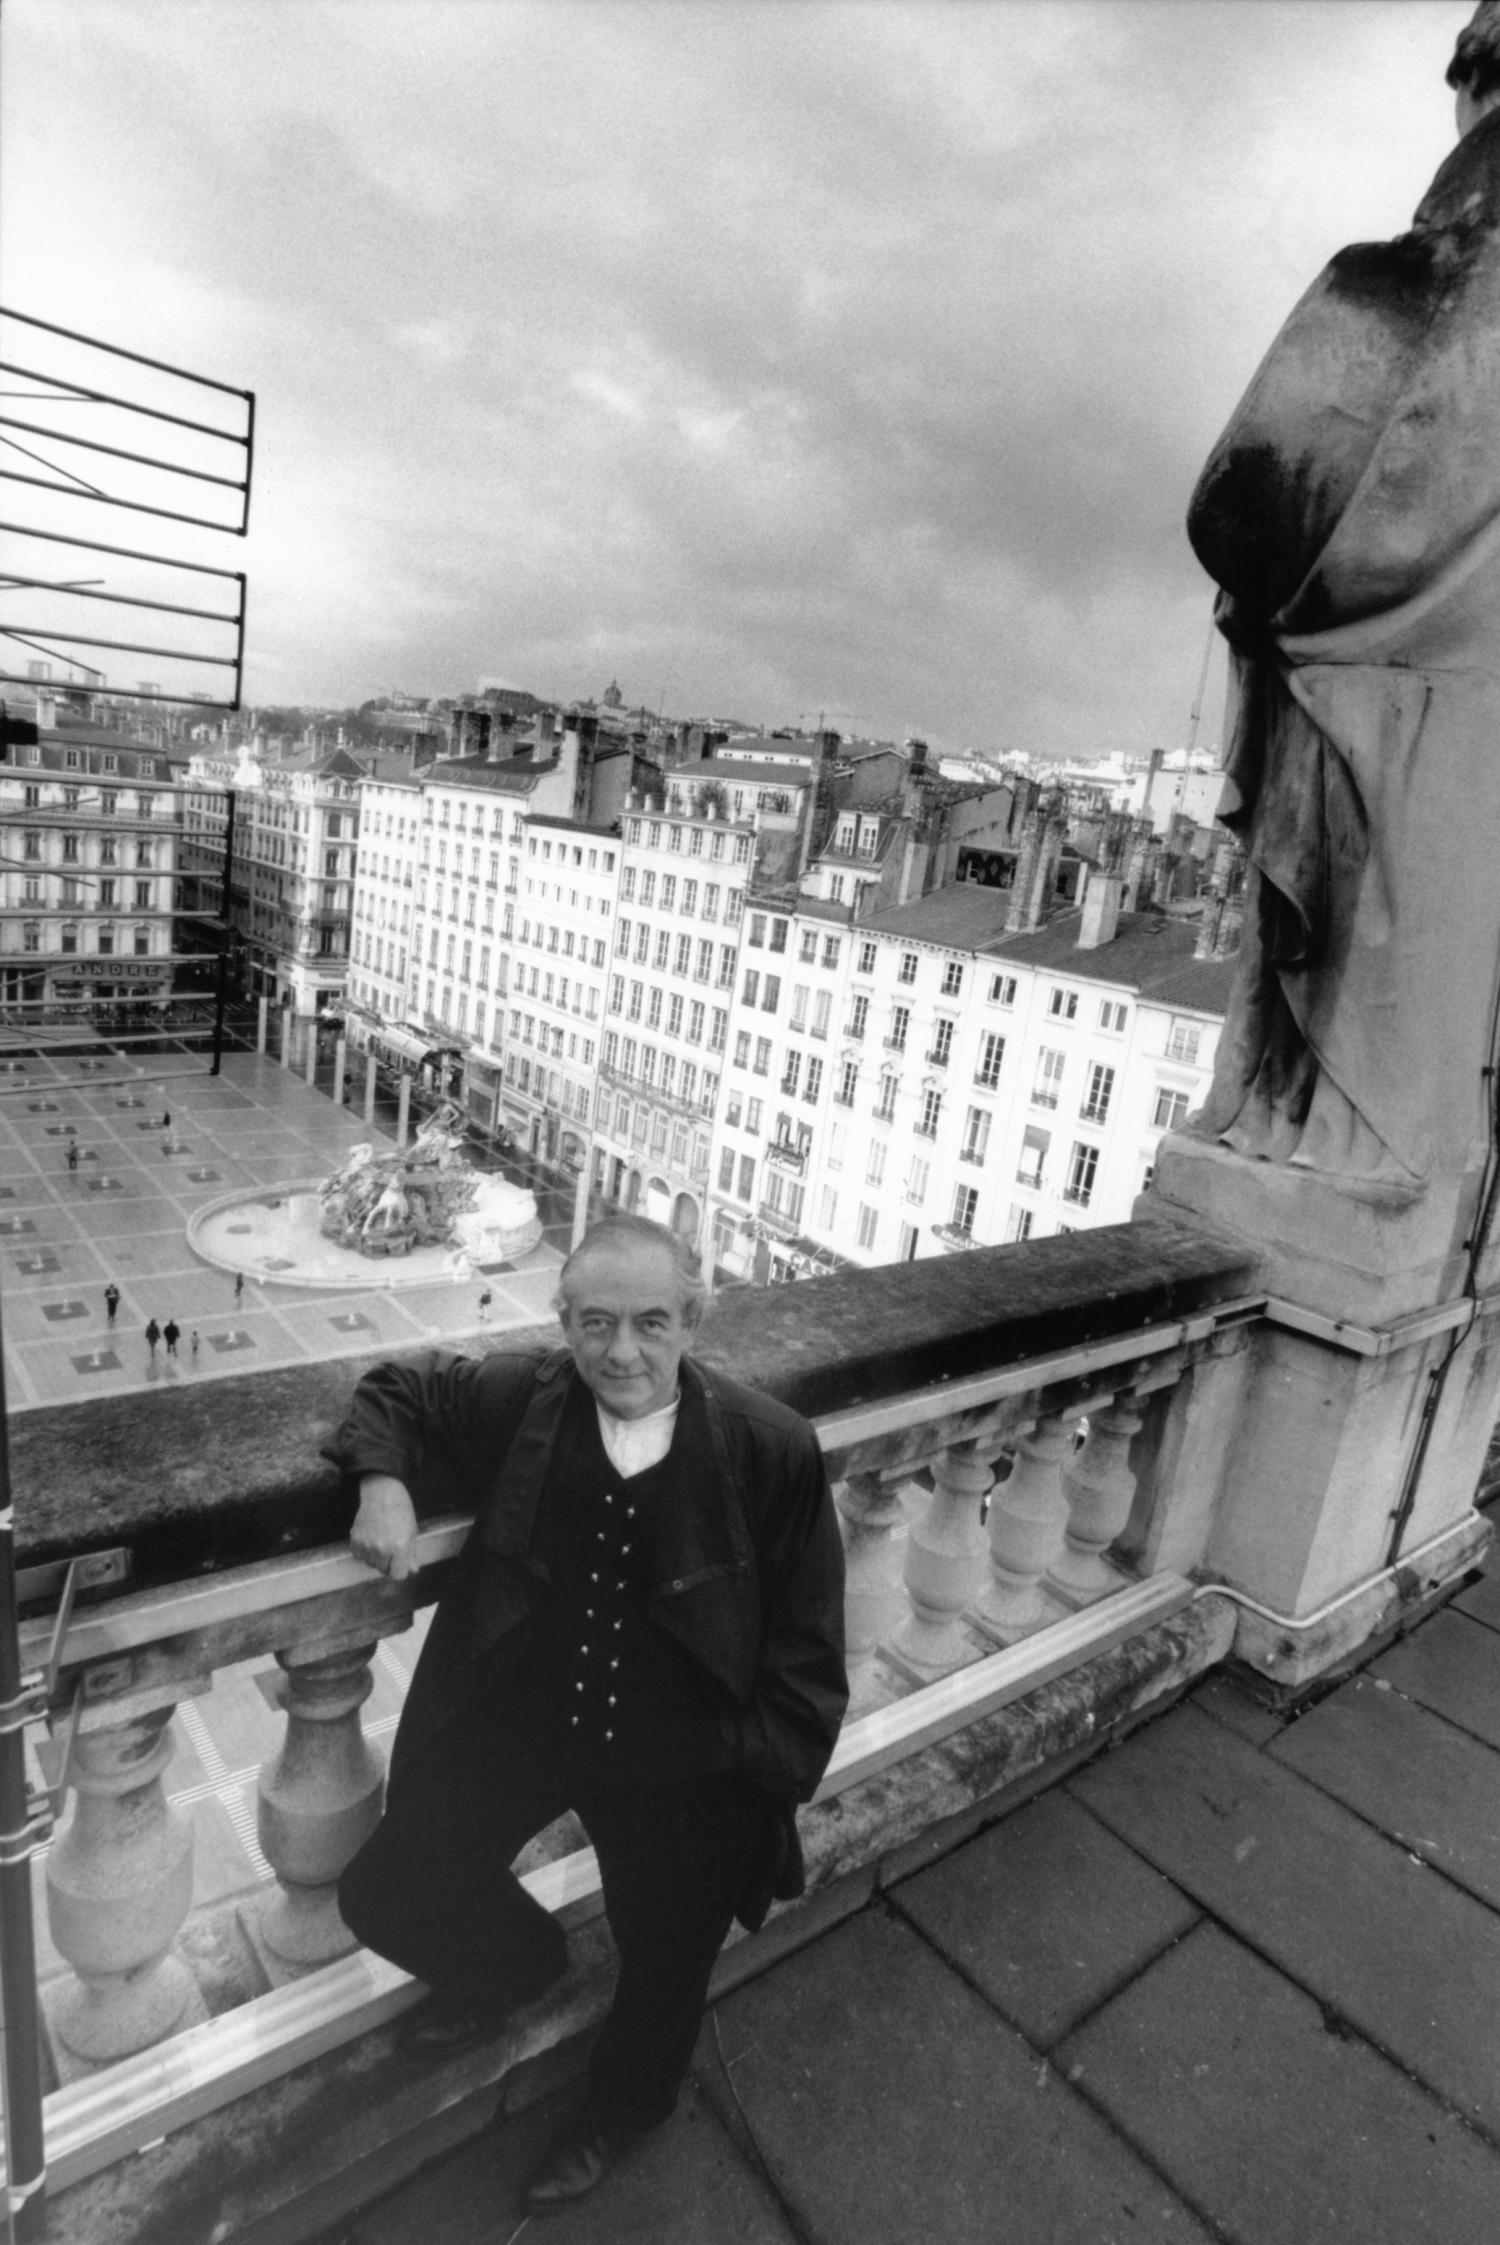 Place des Terreaux : l'artiste Daniel Buren envisage de porter plainte  contre la Ville de Lyon